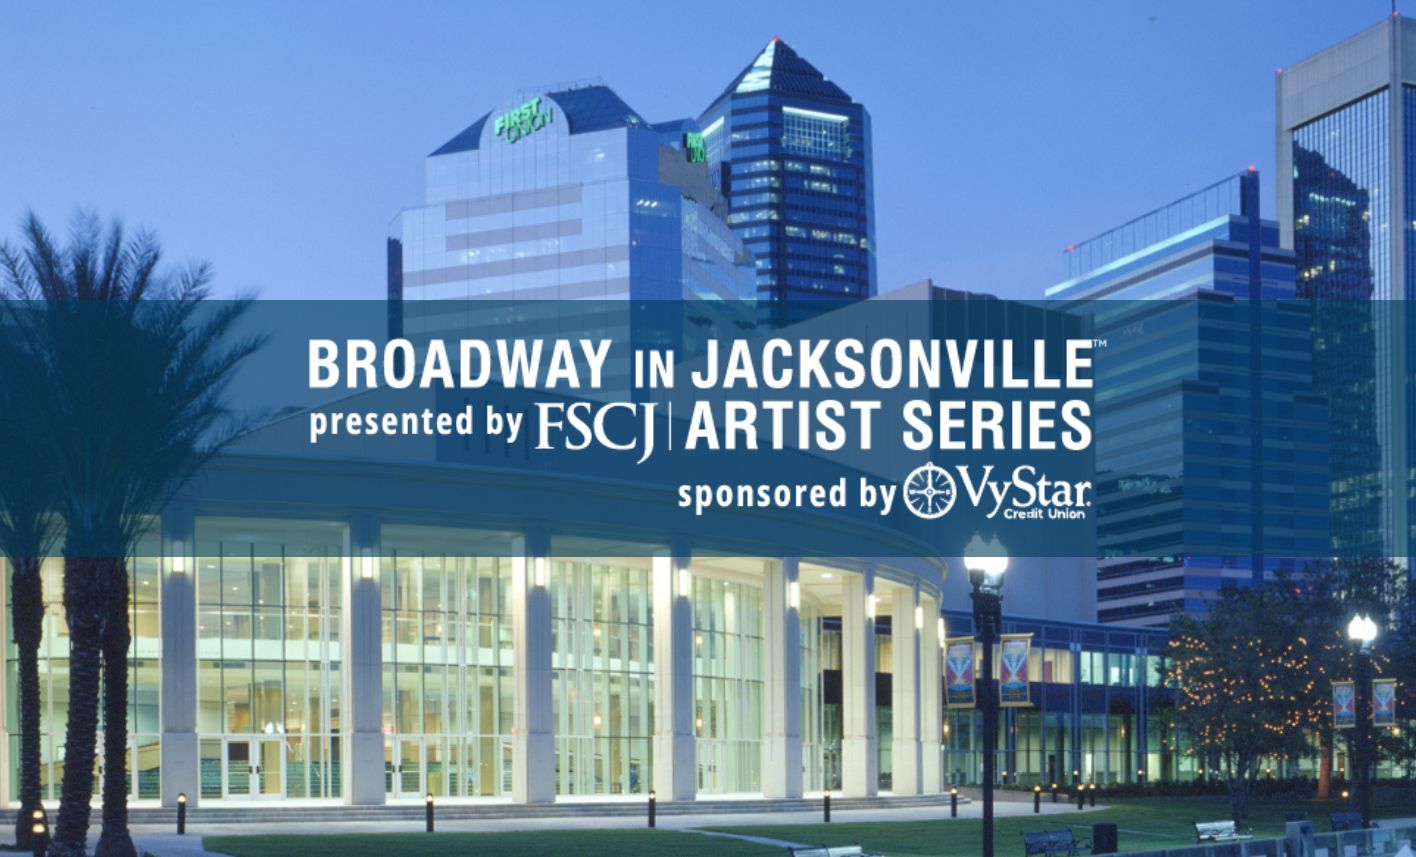 Broadway in Jacksonville presented by FSCJ Artist Series 